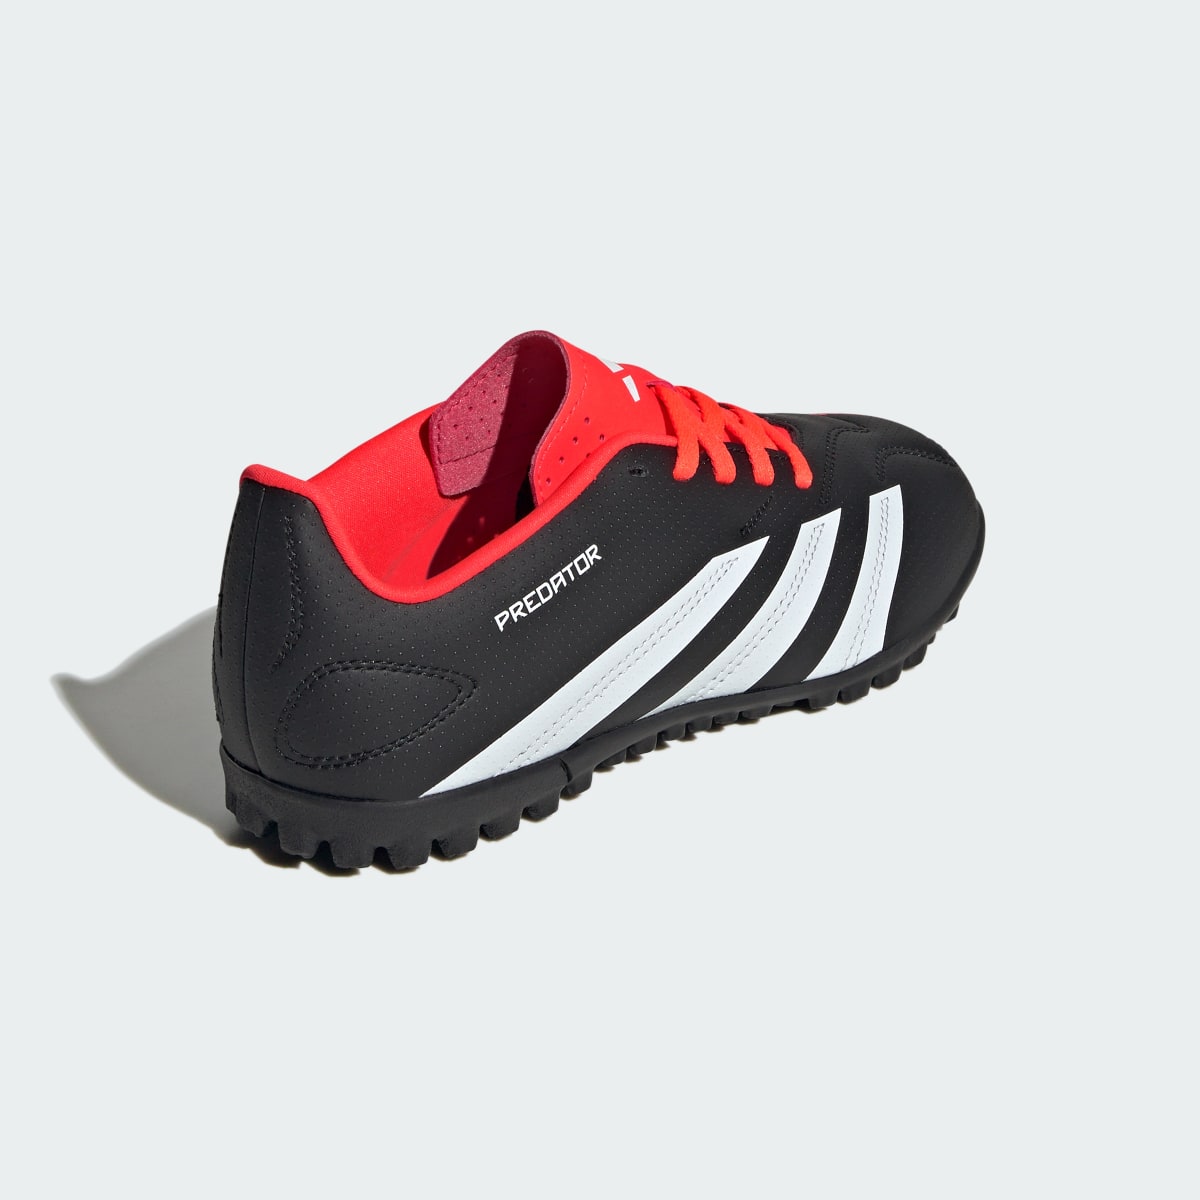 Adidas Predator Club Turf Football Boots. 6